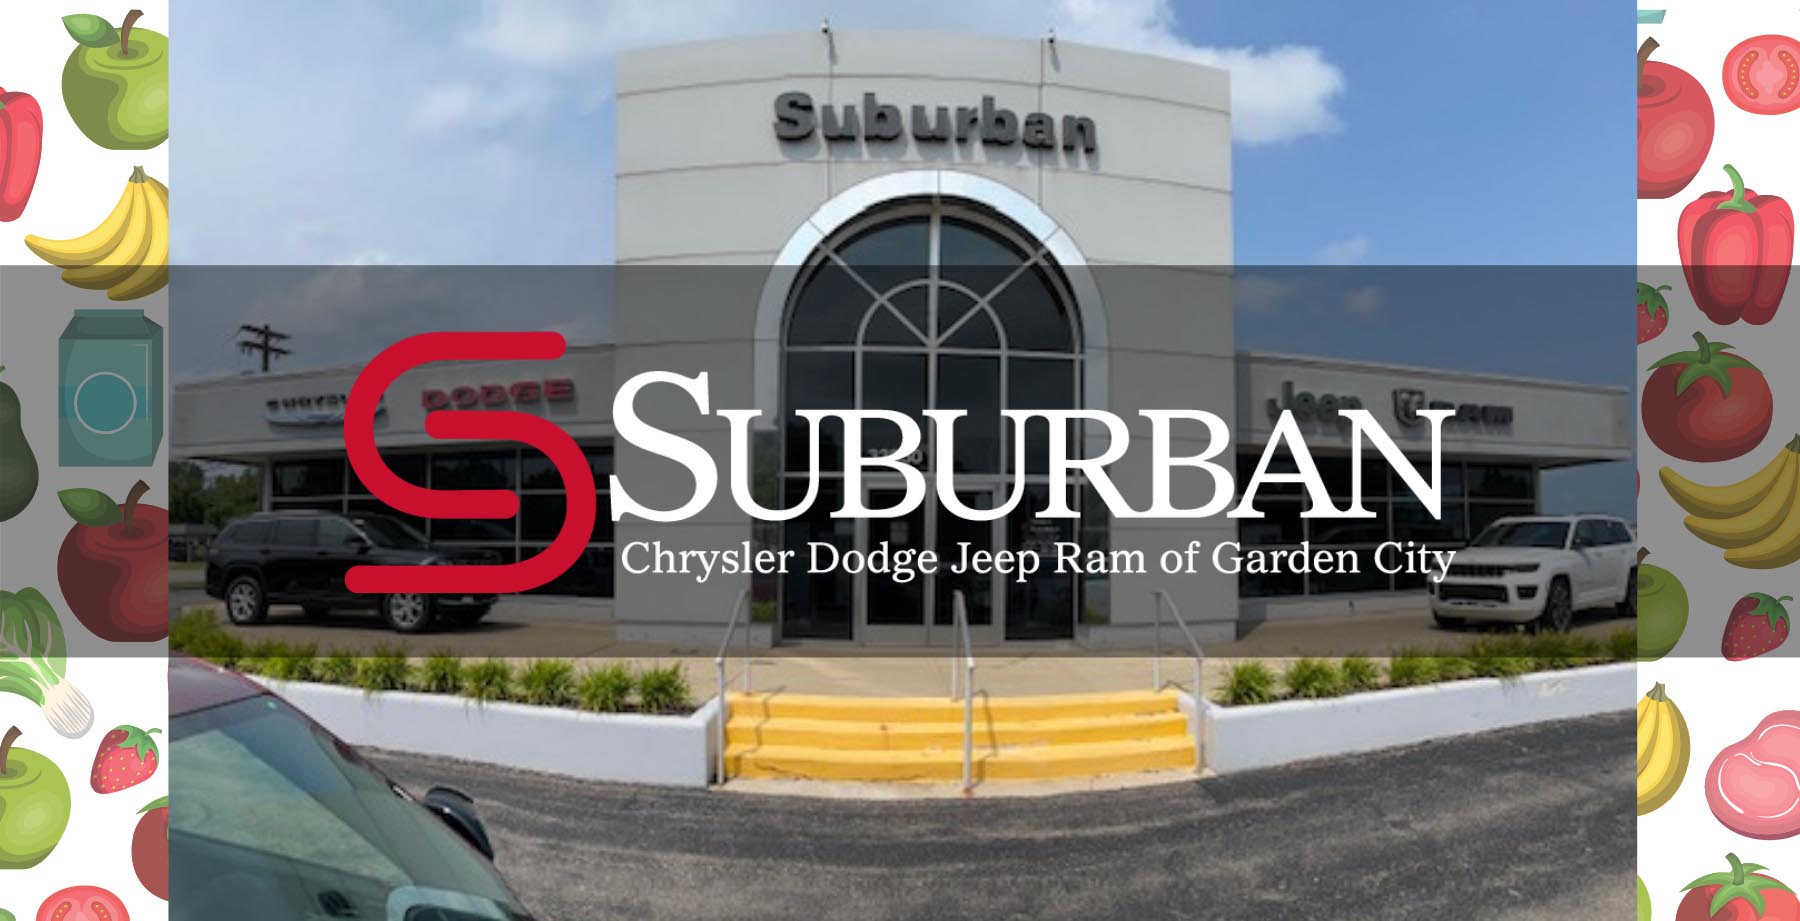 Suburban Chrysler Dodge Jeep Ram of Garden City